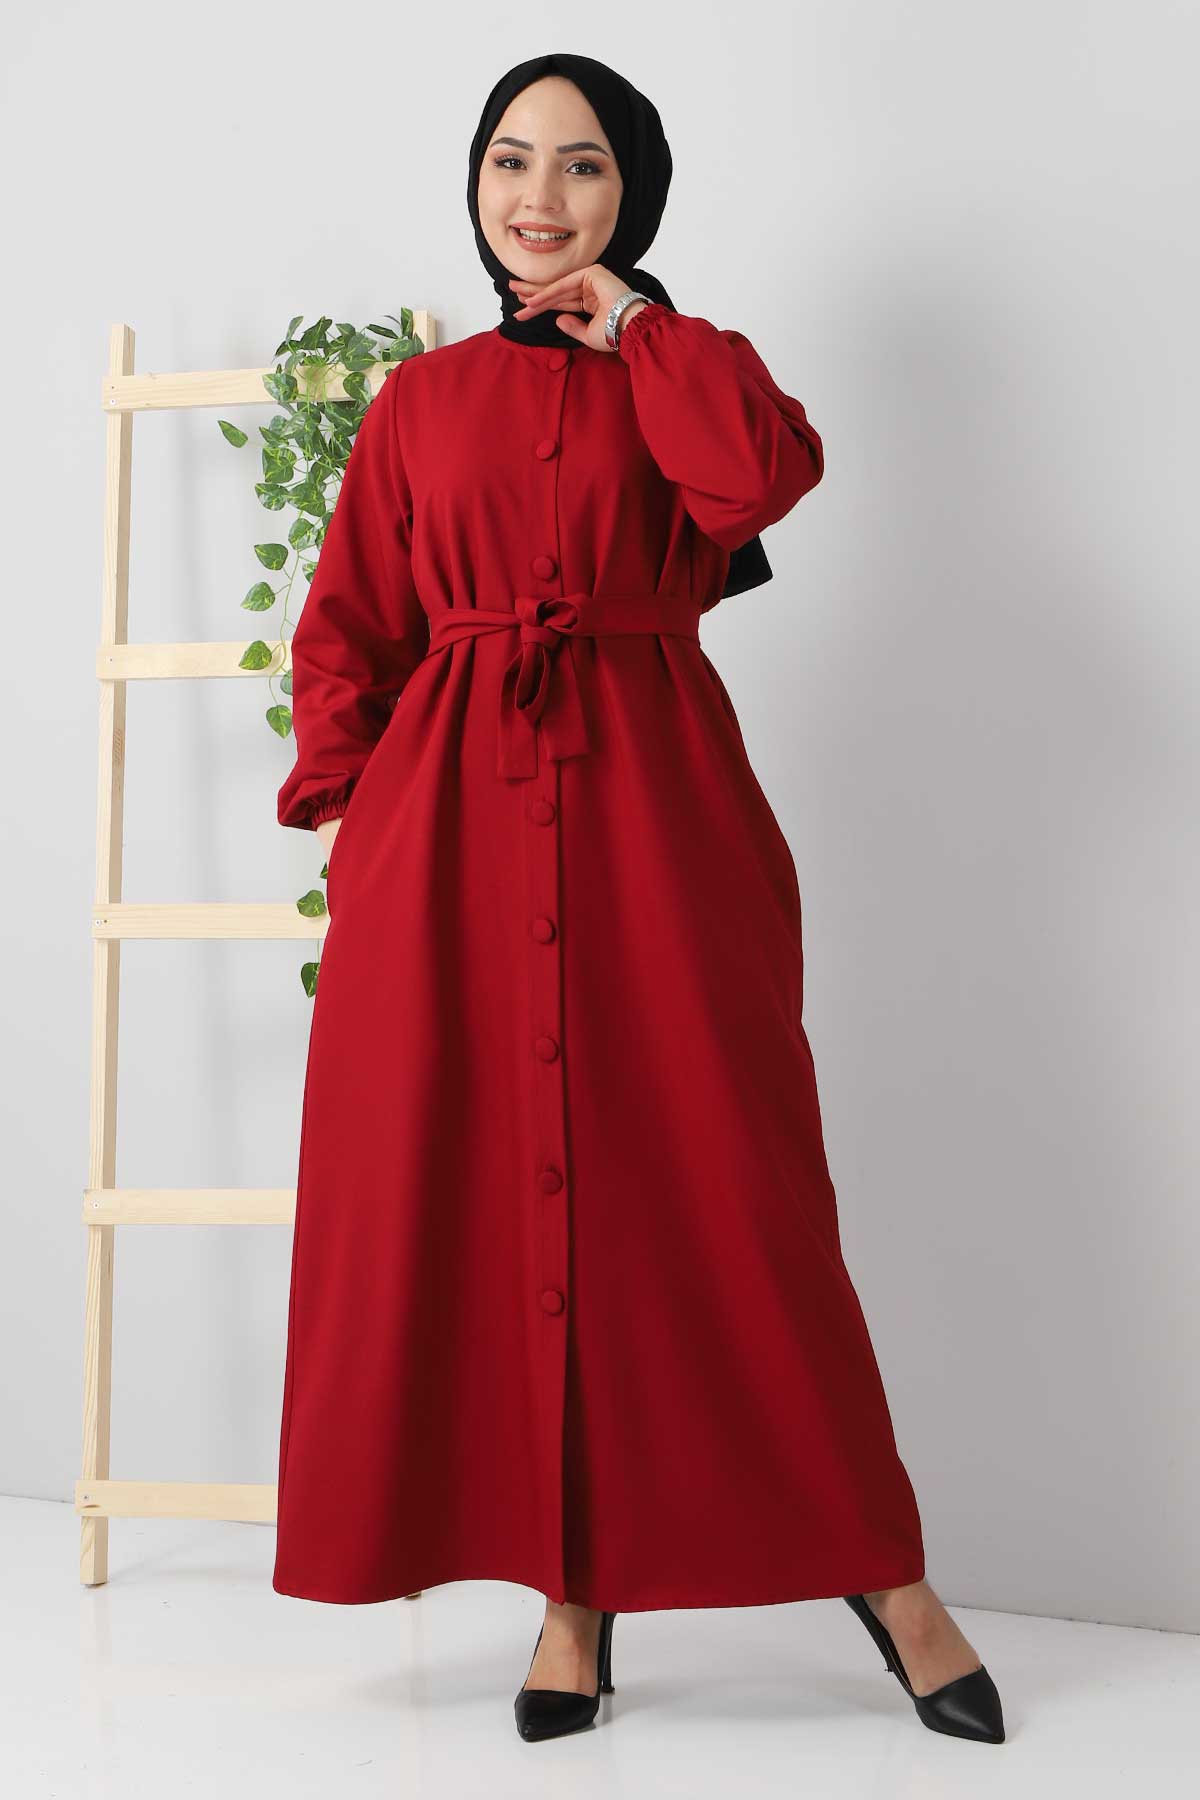 Tesettür Dünyası - Buttoned Dress TSD211213 Claret Red